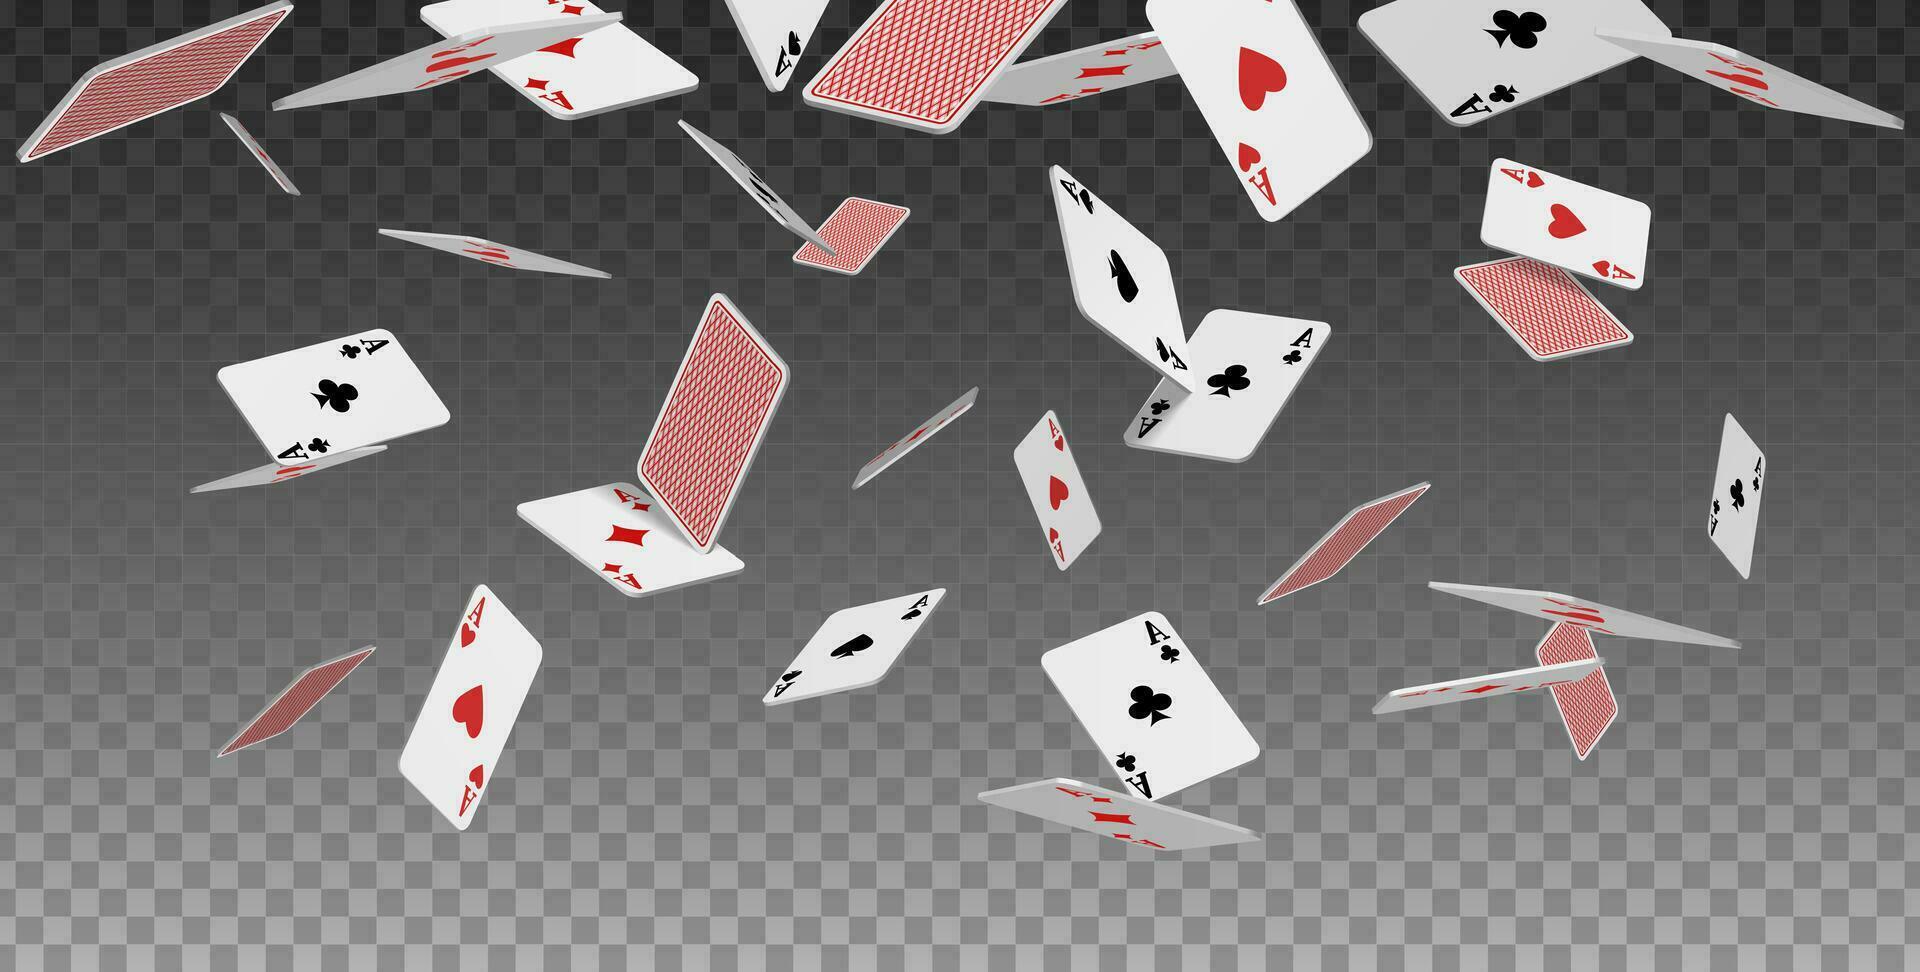 3d realistisch Vektor Symbol. fliegend spielen Karten von Asse von Diamanten Vereine Spaten und Herzen , fallen auf das Tisch.